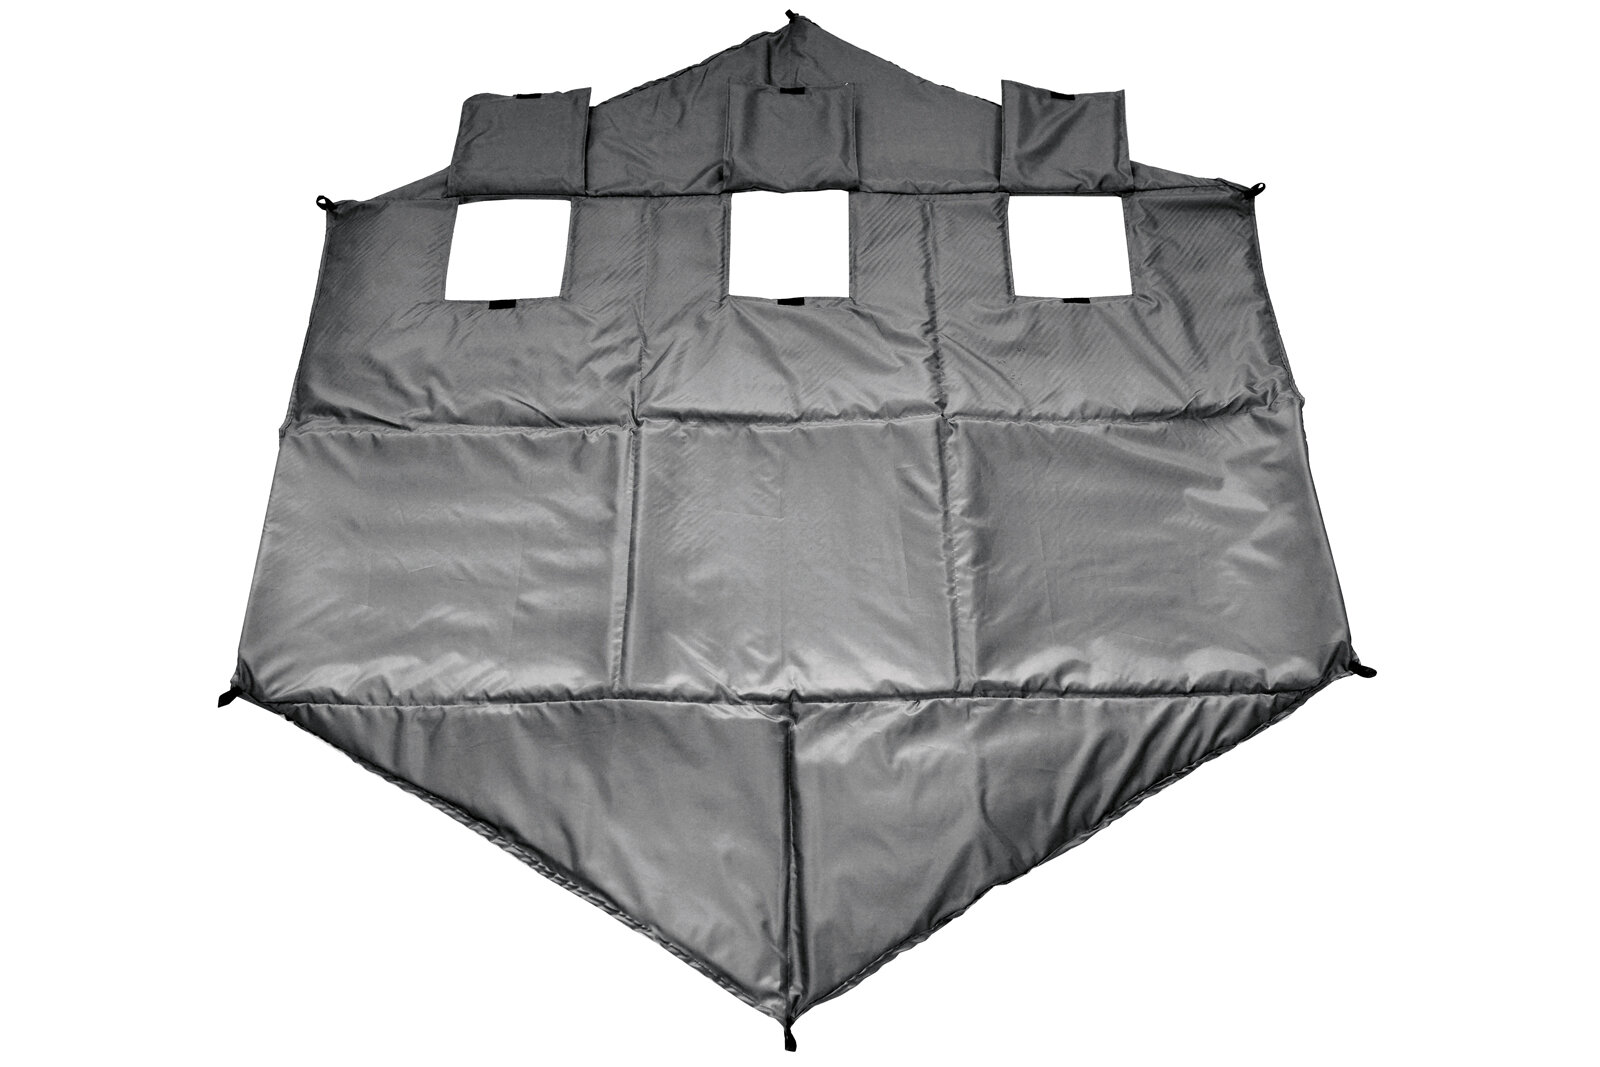 Пол Гекса 220х220 см для зимней палатки Зонт 6-угольный, с 3 отверстиями для лунок, оксфорд 210, утепленный